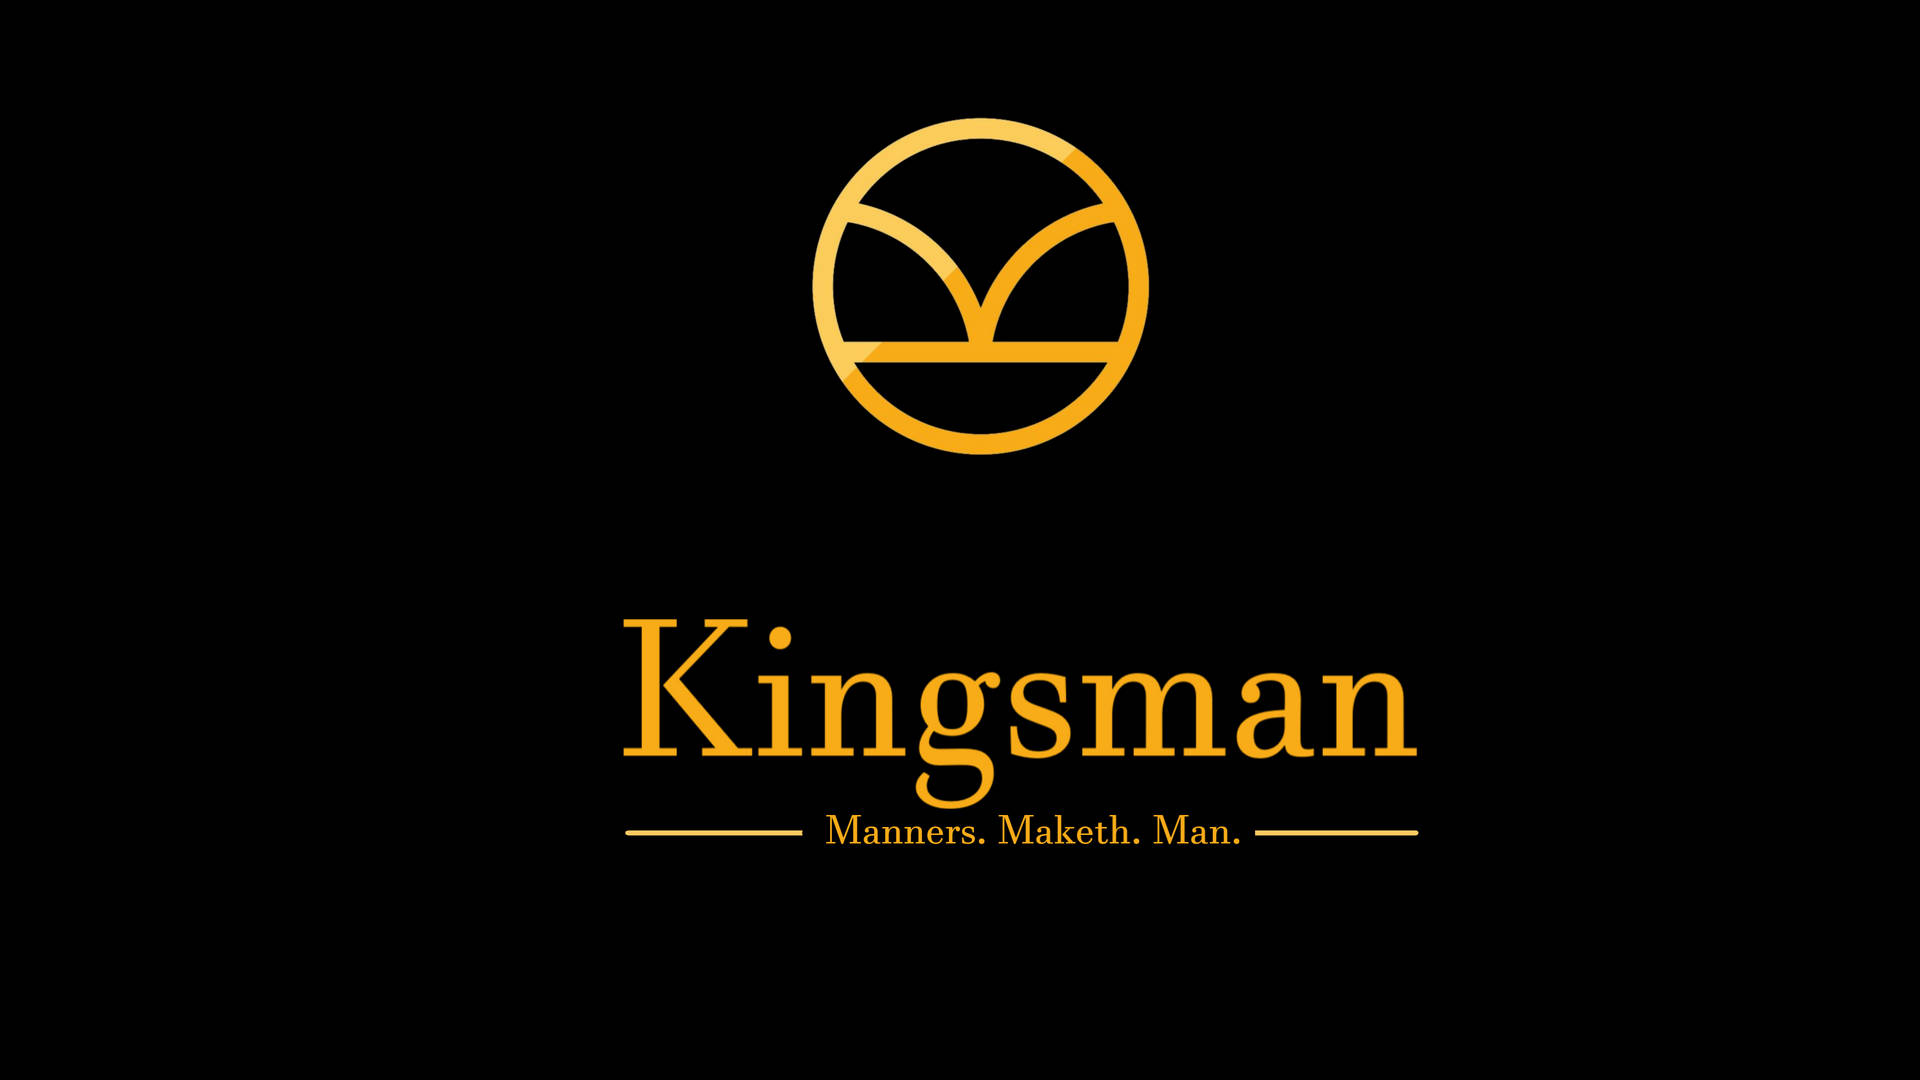 Kingsmanfilmaffisch. Wallpaper